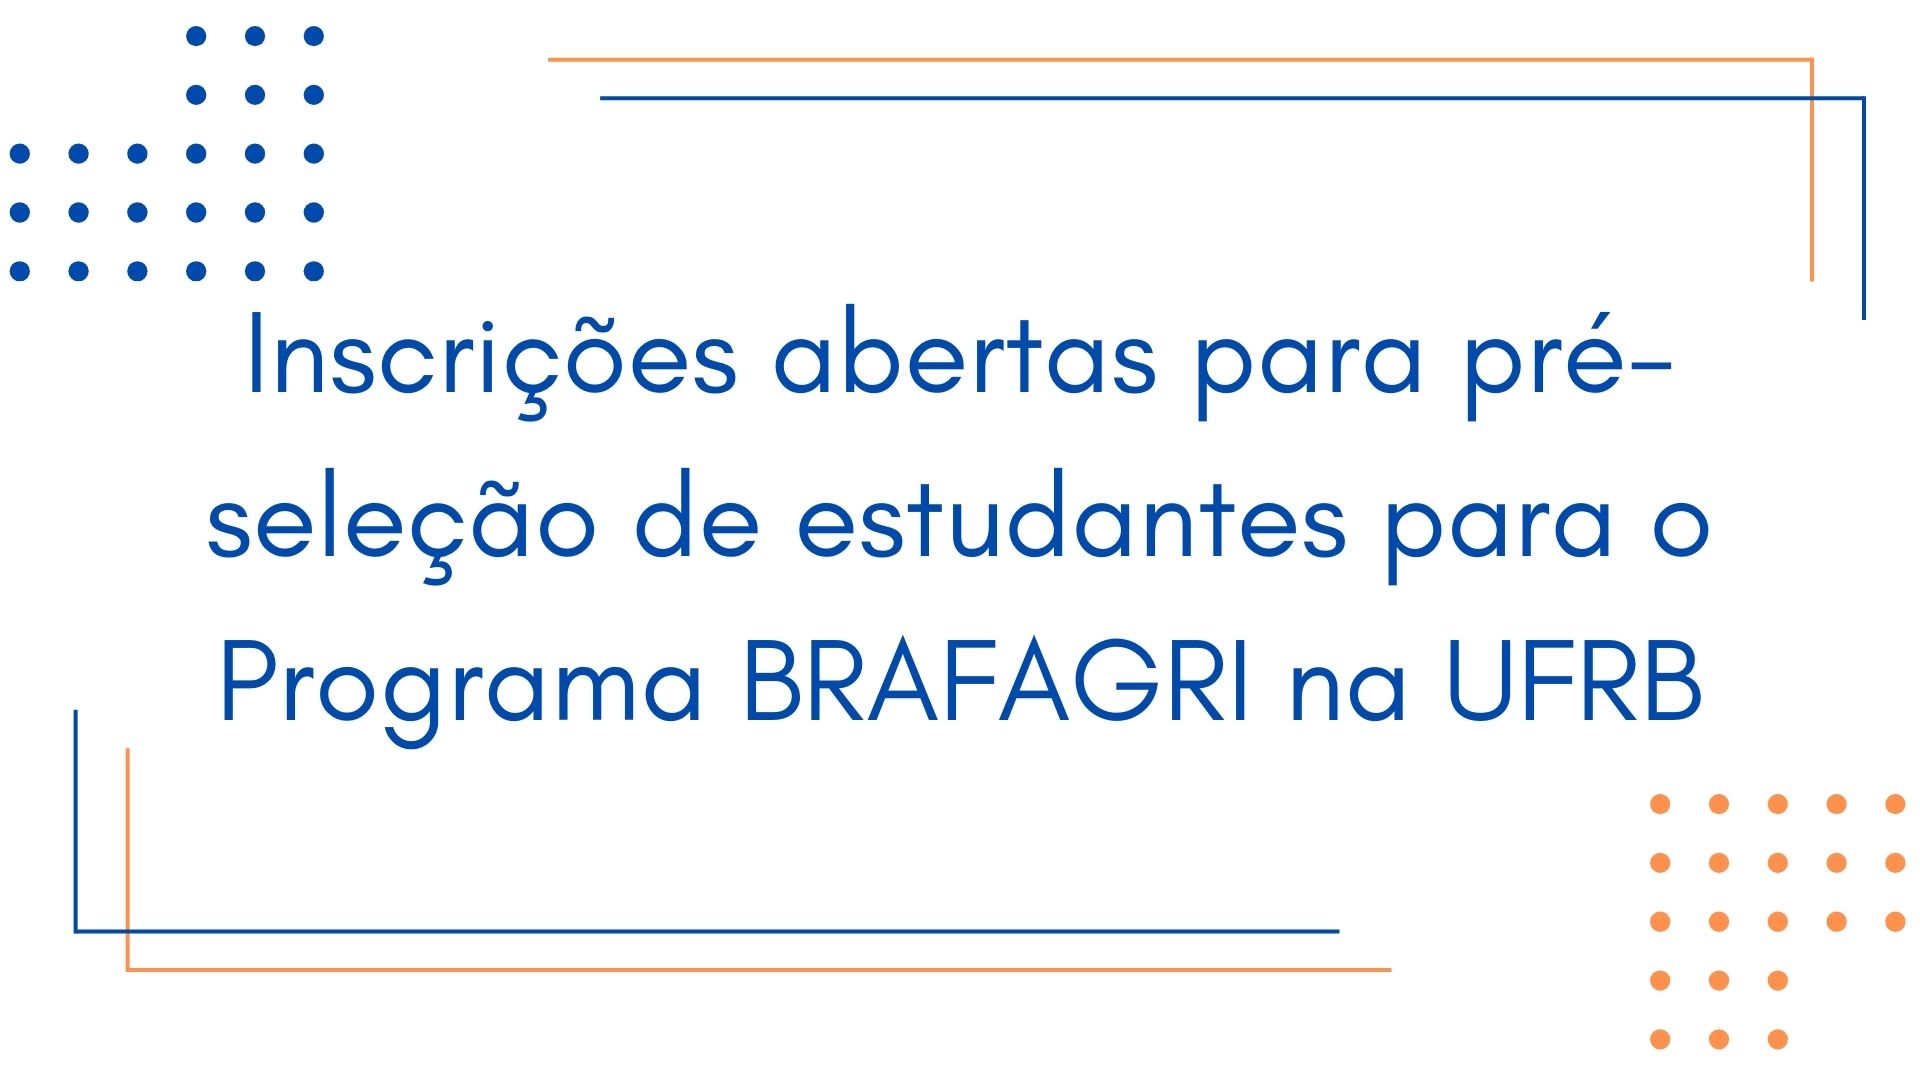 Inscrições abertas para pré-seleção de estudantes para o Programa BRAFAGRI na UFRB